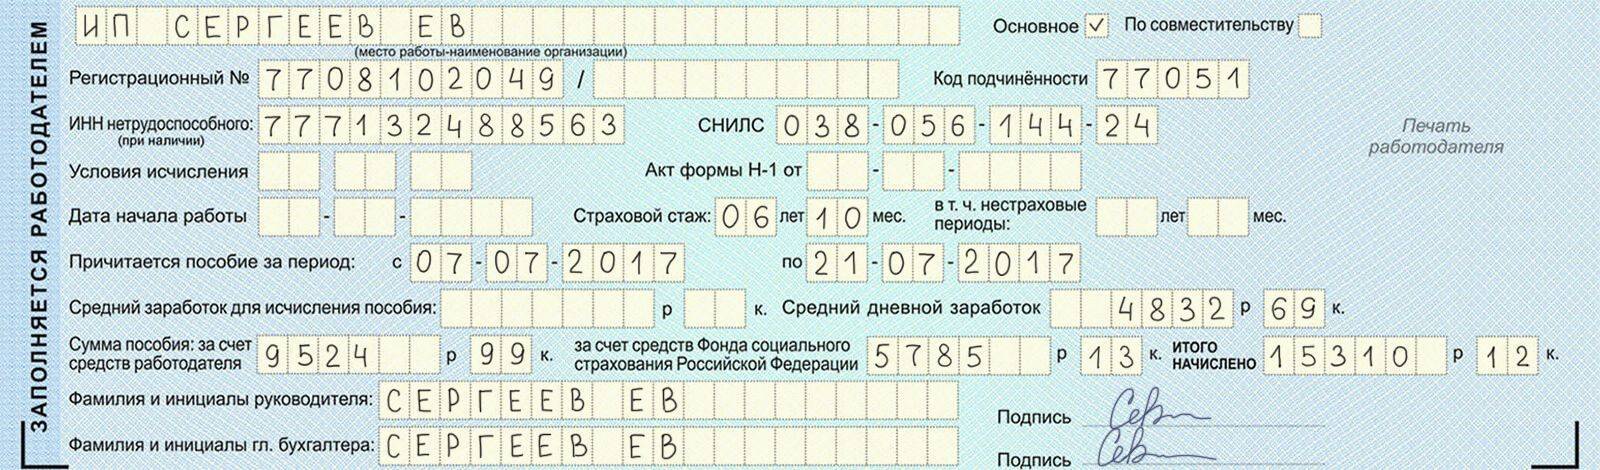 Бланк листка нетрудоспособности: форма, как должен выглядеть | kopomko.ru